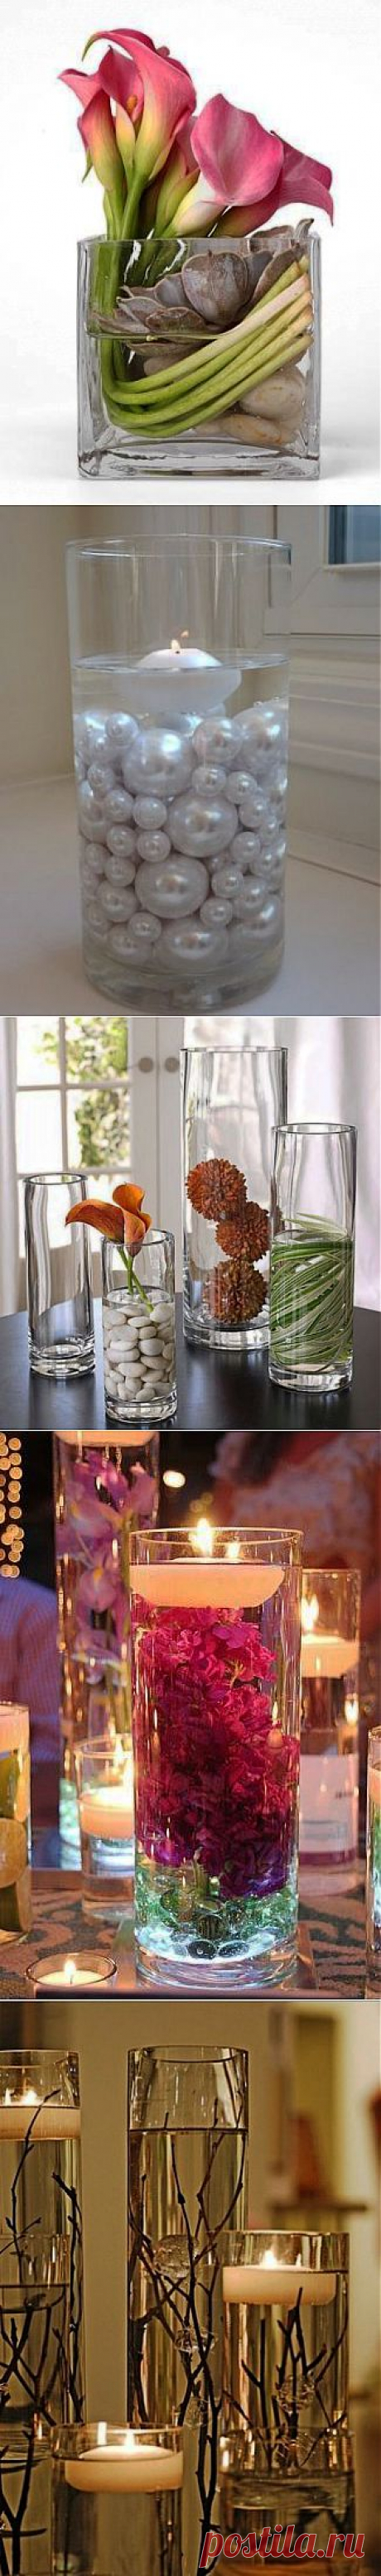 Разновидности наполнителей для прозрачной вазы